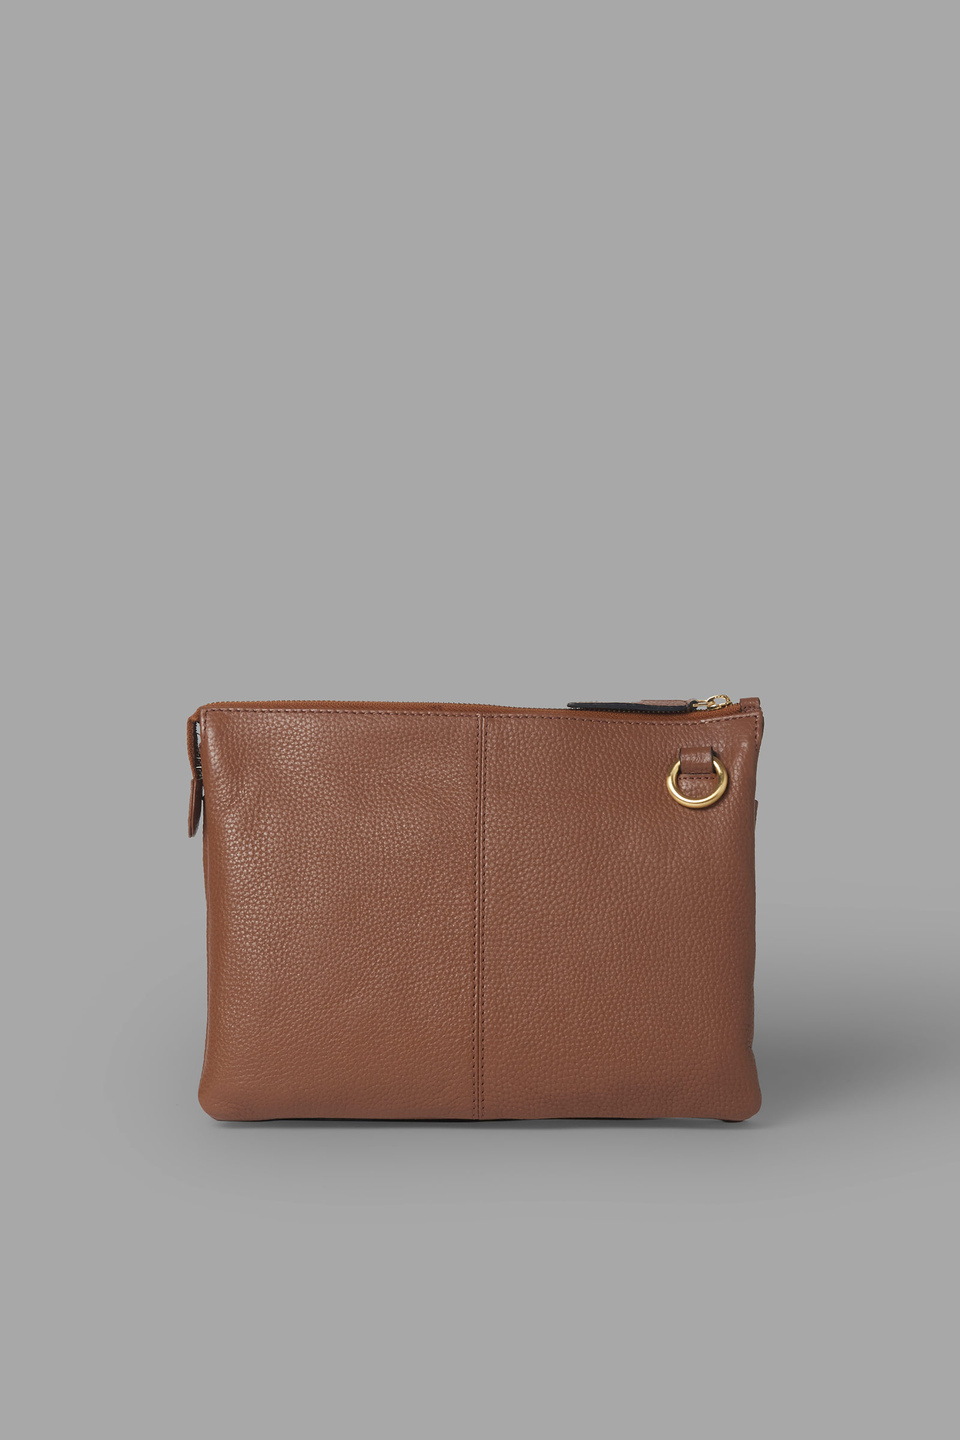 Leather messenger bag - La Martina - Official Online Shop